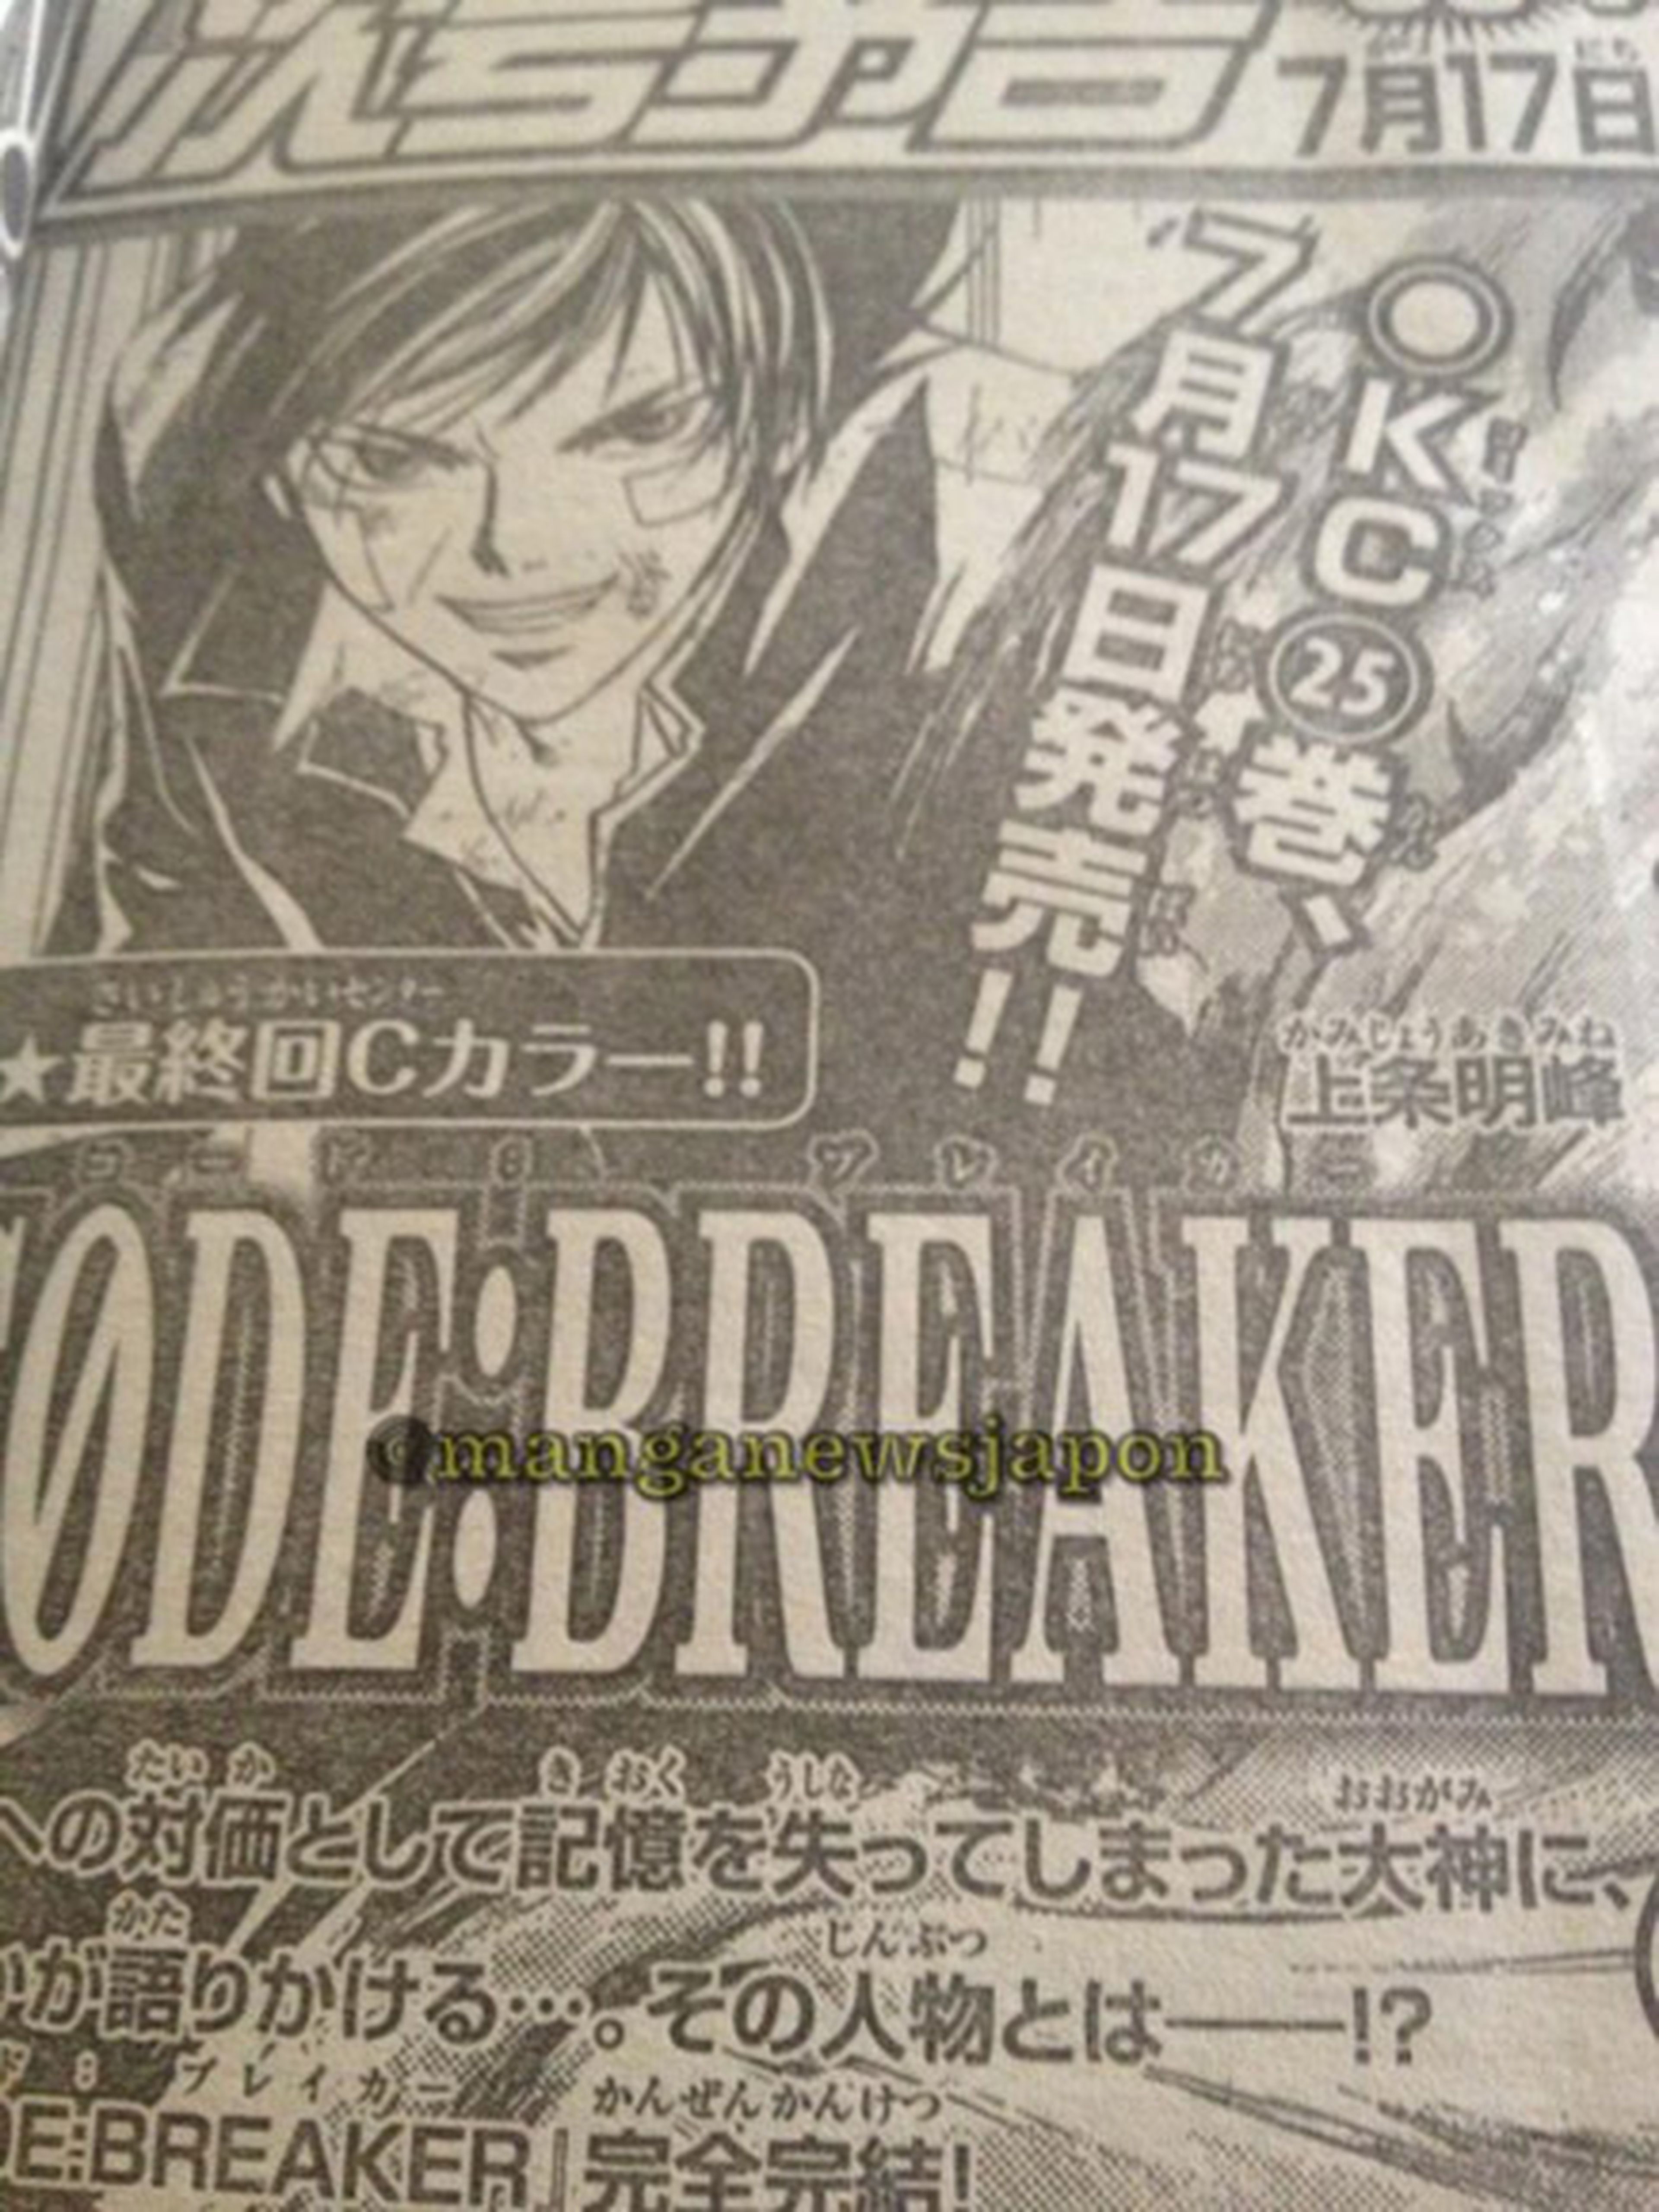 Finaliza el manga Code: Breaker